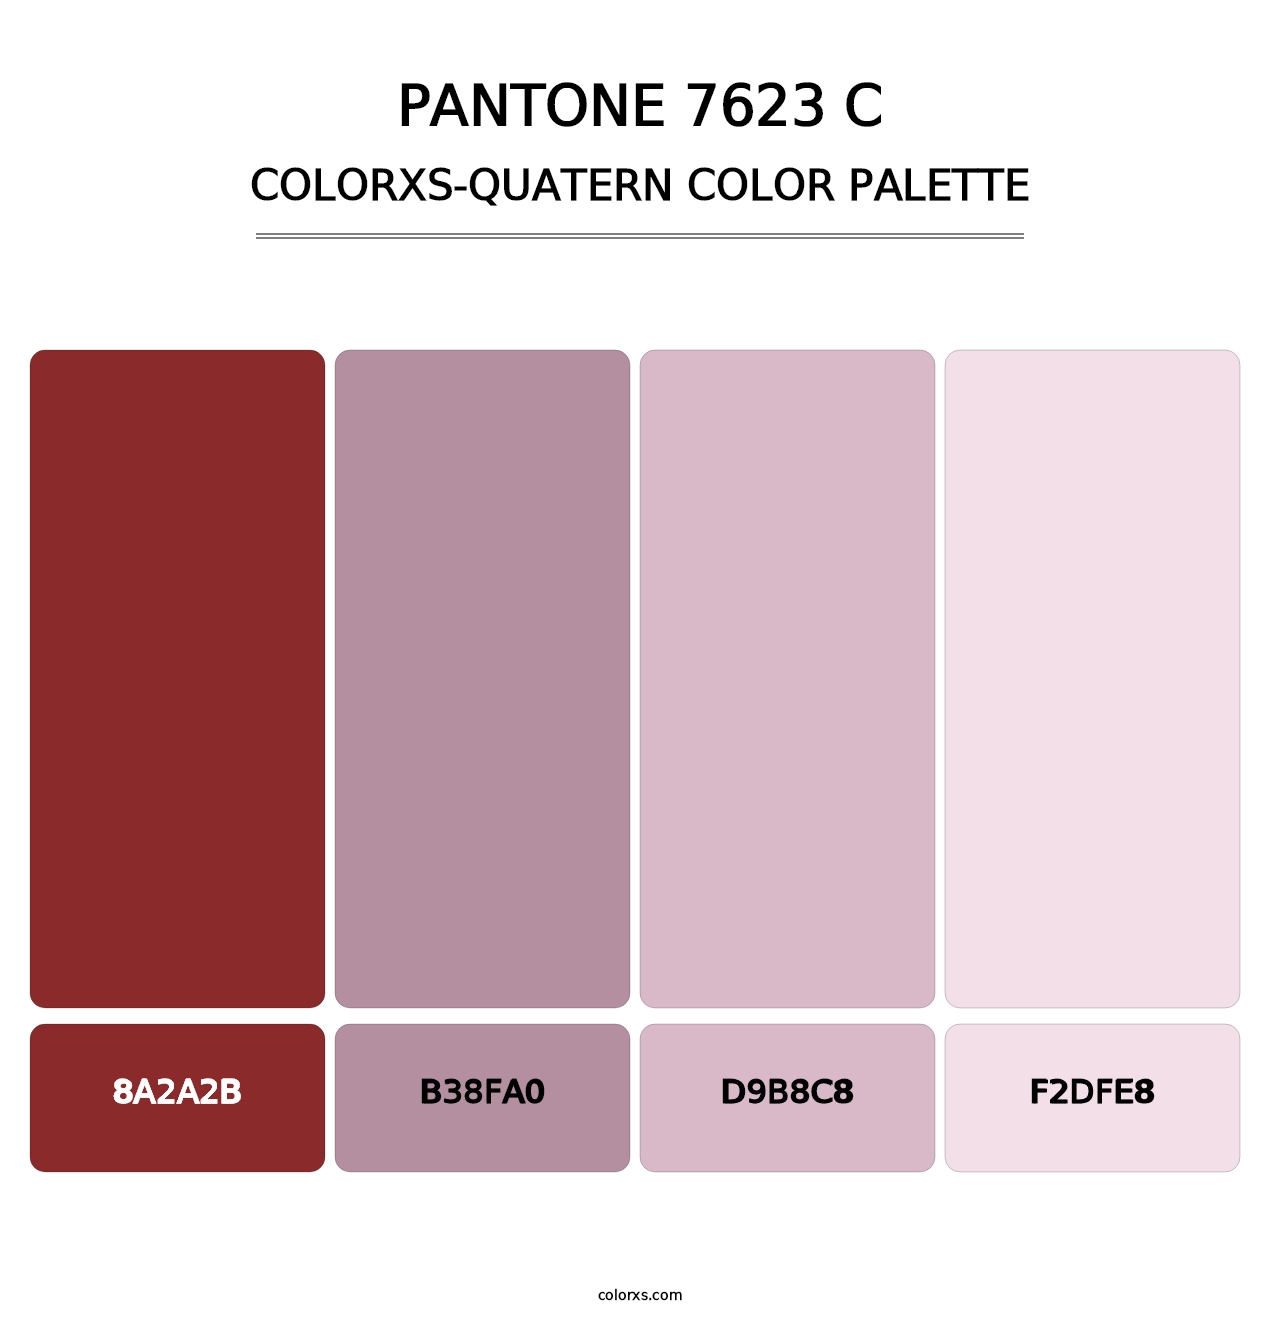 PANTONE 7623 C - Colorxs Quatern Palette